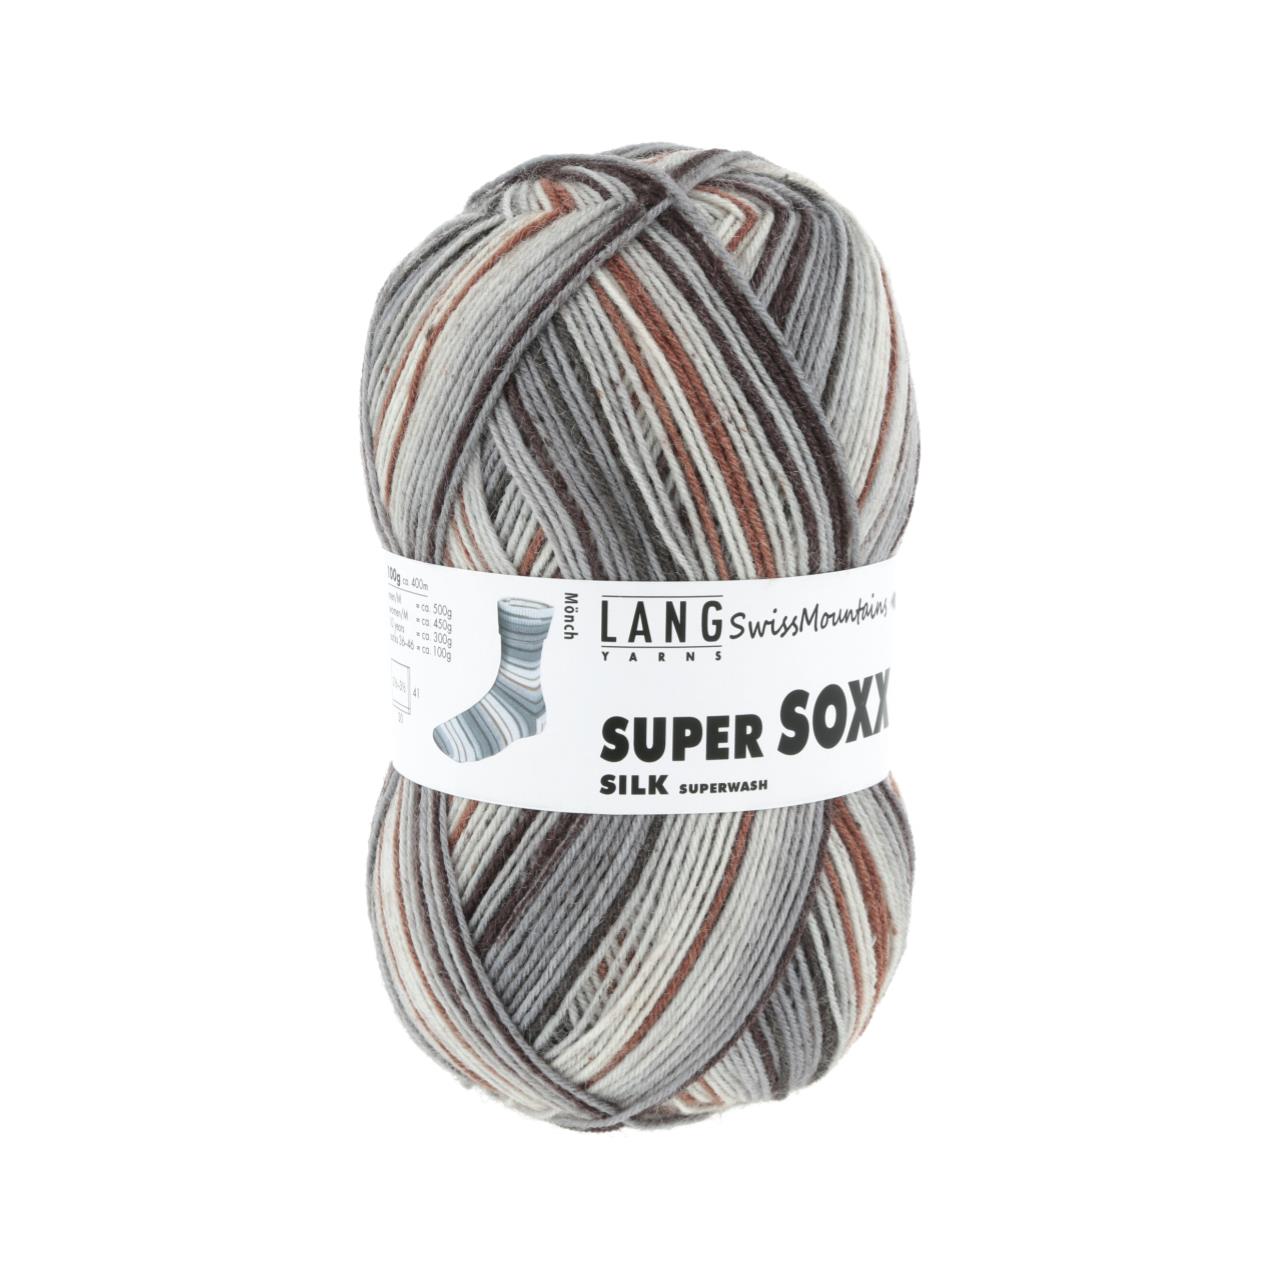 Super Soxx Silk Color 4-Fach 407 Grau/Braun 1127 Mönch